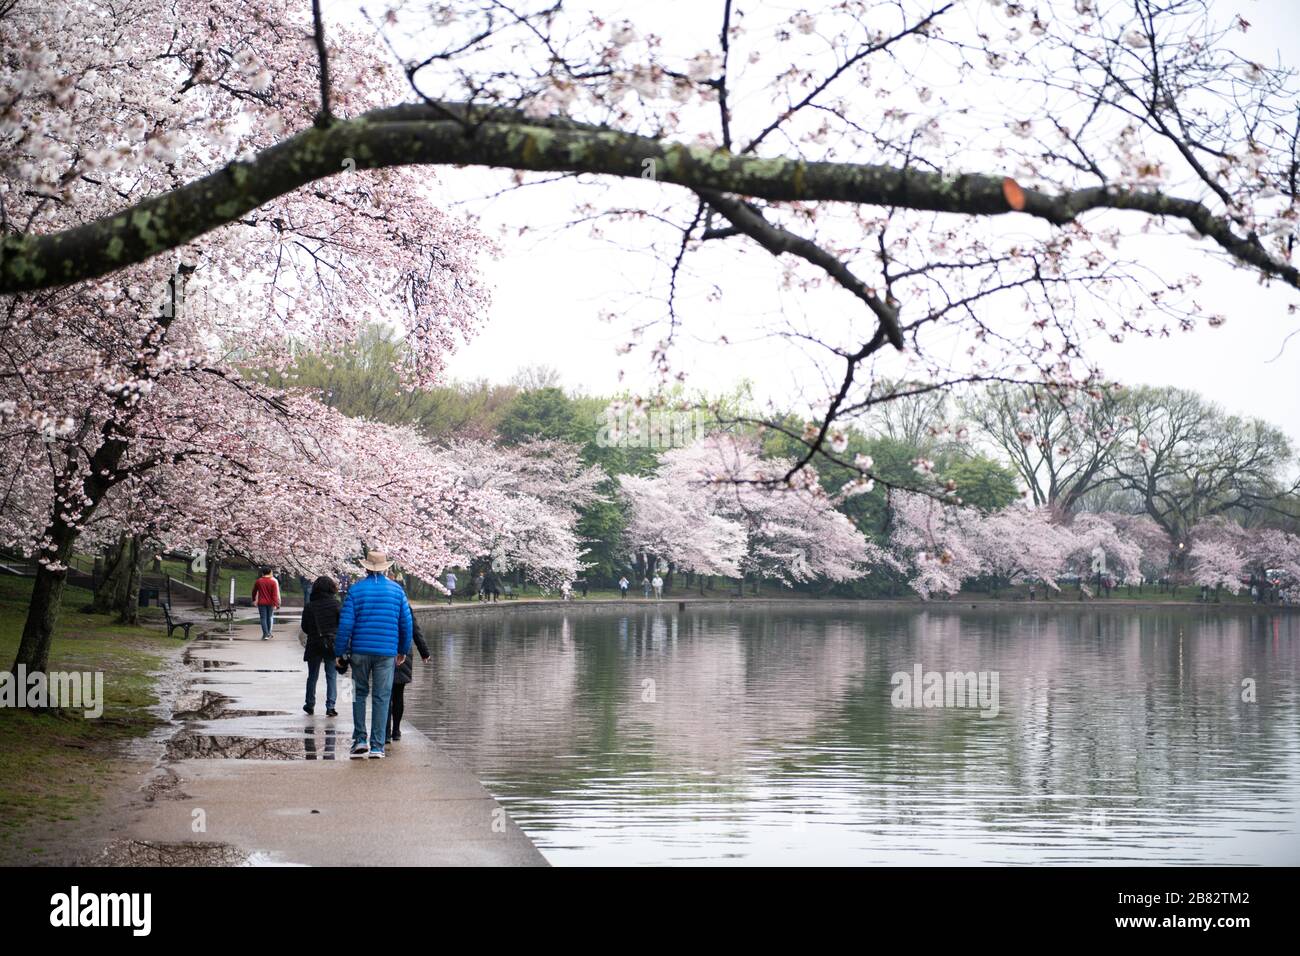 WASHINGTON, DC - chaque printemps, environ 1 700 cerisiers fleurissent autour du bassin Tidal de Washington DC. Situé parmi certains des célèbres monuments de DC, les cerisiers en fleurs attirent généralement des centaines de milliers de visiteurs. En 2020, les efforts visant à contenir la propagation du nouveau coronavirus (COVID-19) ont permis de réduire considérablement la fréquentation. Les cerisiers en fleurs ont atteint le pic de floraison le 20 mars 2020. Les arbres remontent à un don du Japon en 1912, et il reste encore une poignée d'arbres originaux. Banque D'Images